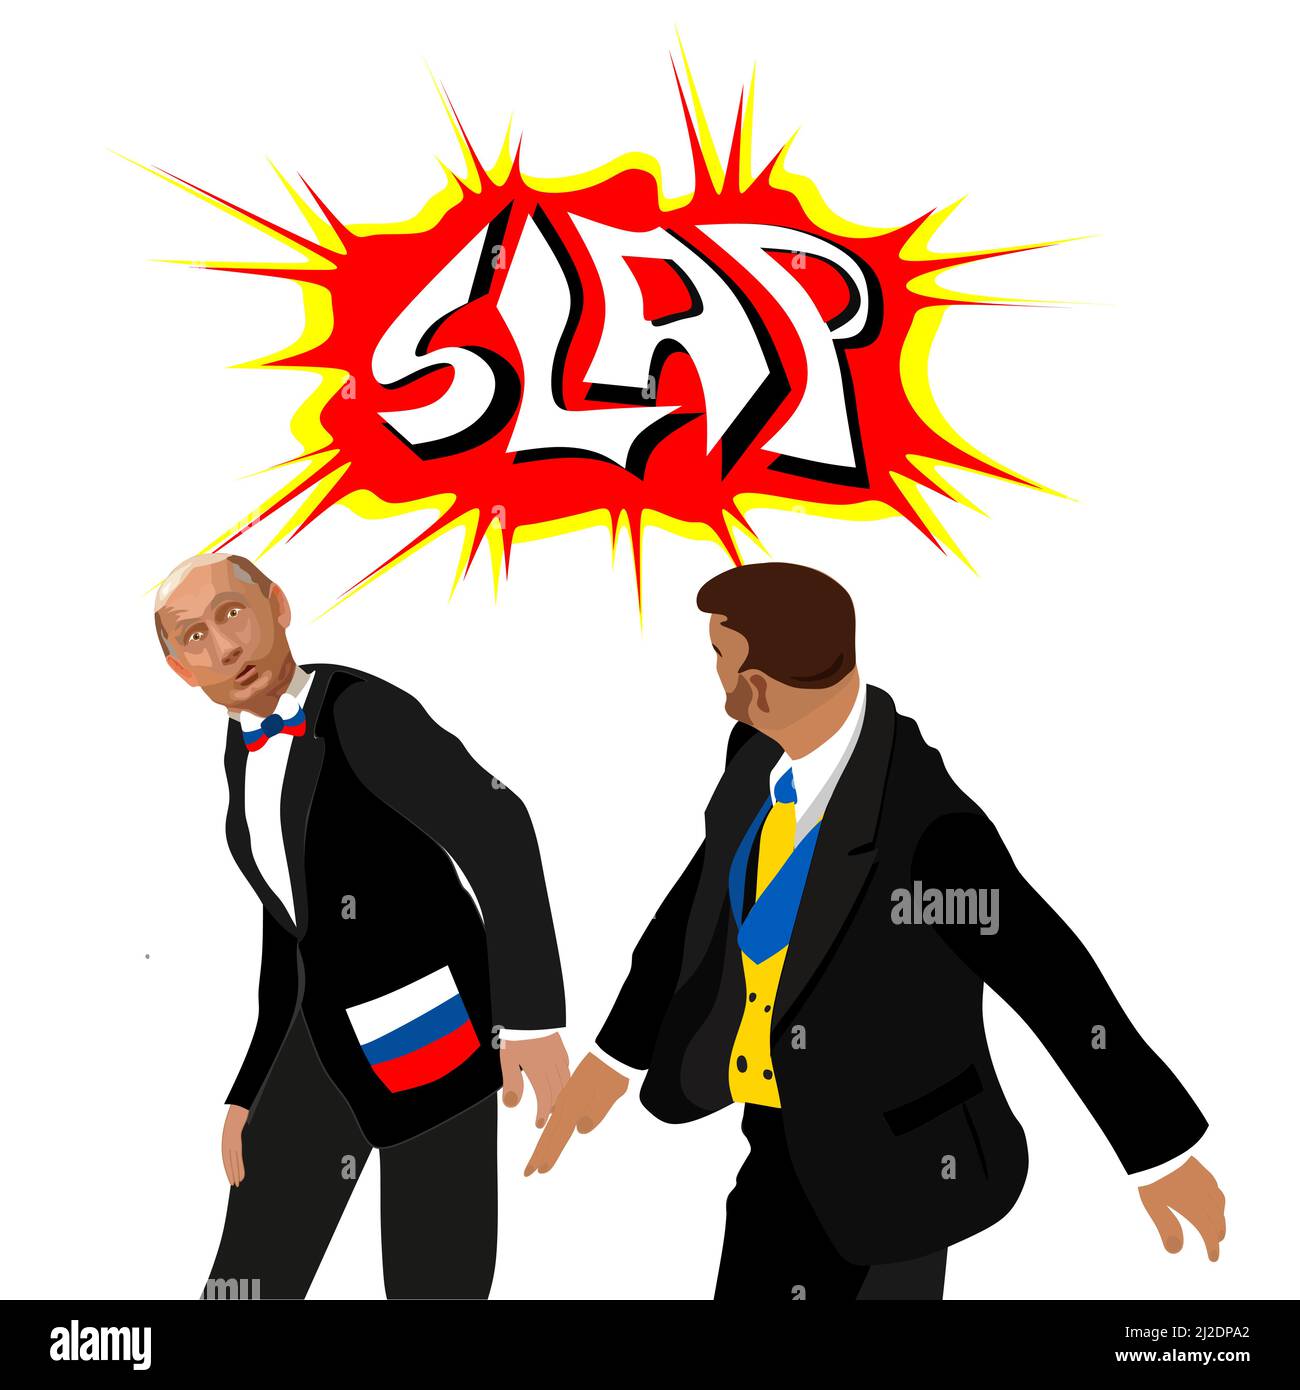 Le président ukrainien Zelensky lance un scalp sur le président russe Poutine avec un discours de Slap Comic une illustration isolée de style dessin animé par bulle. Présidents en costume Illustration de Vecteur